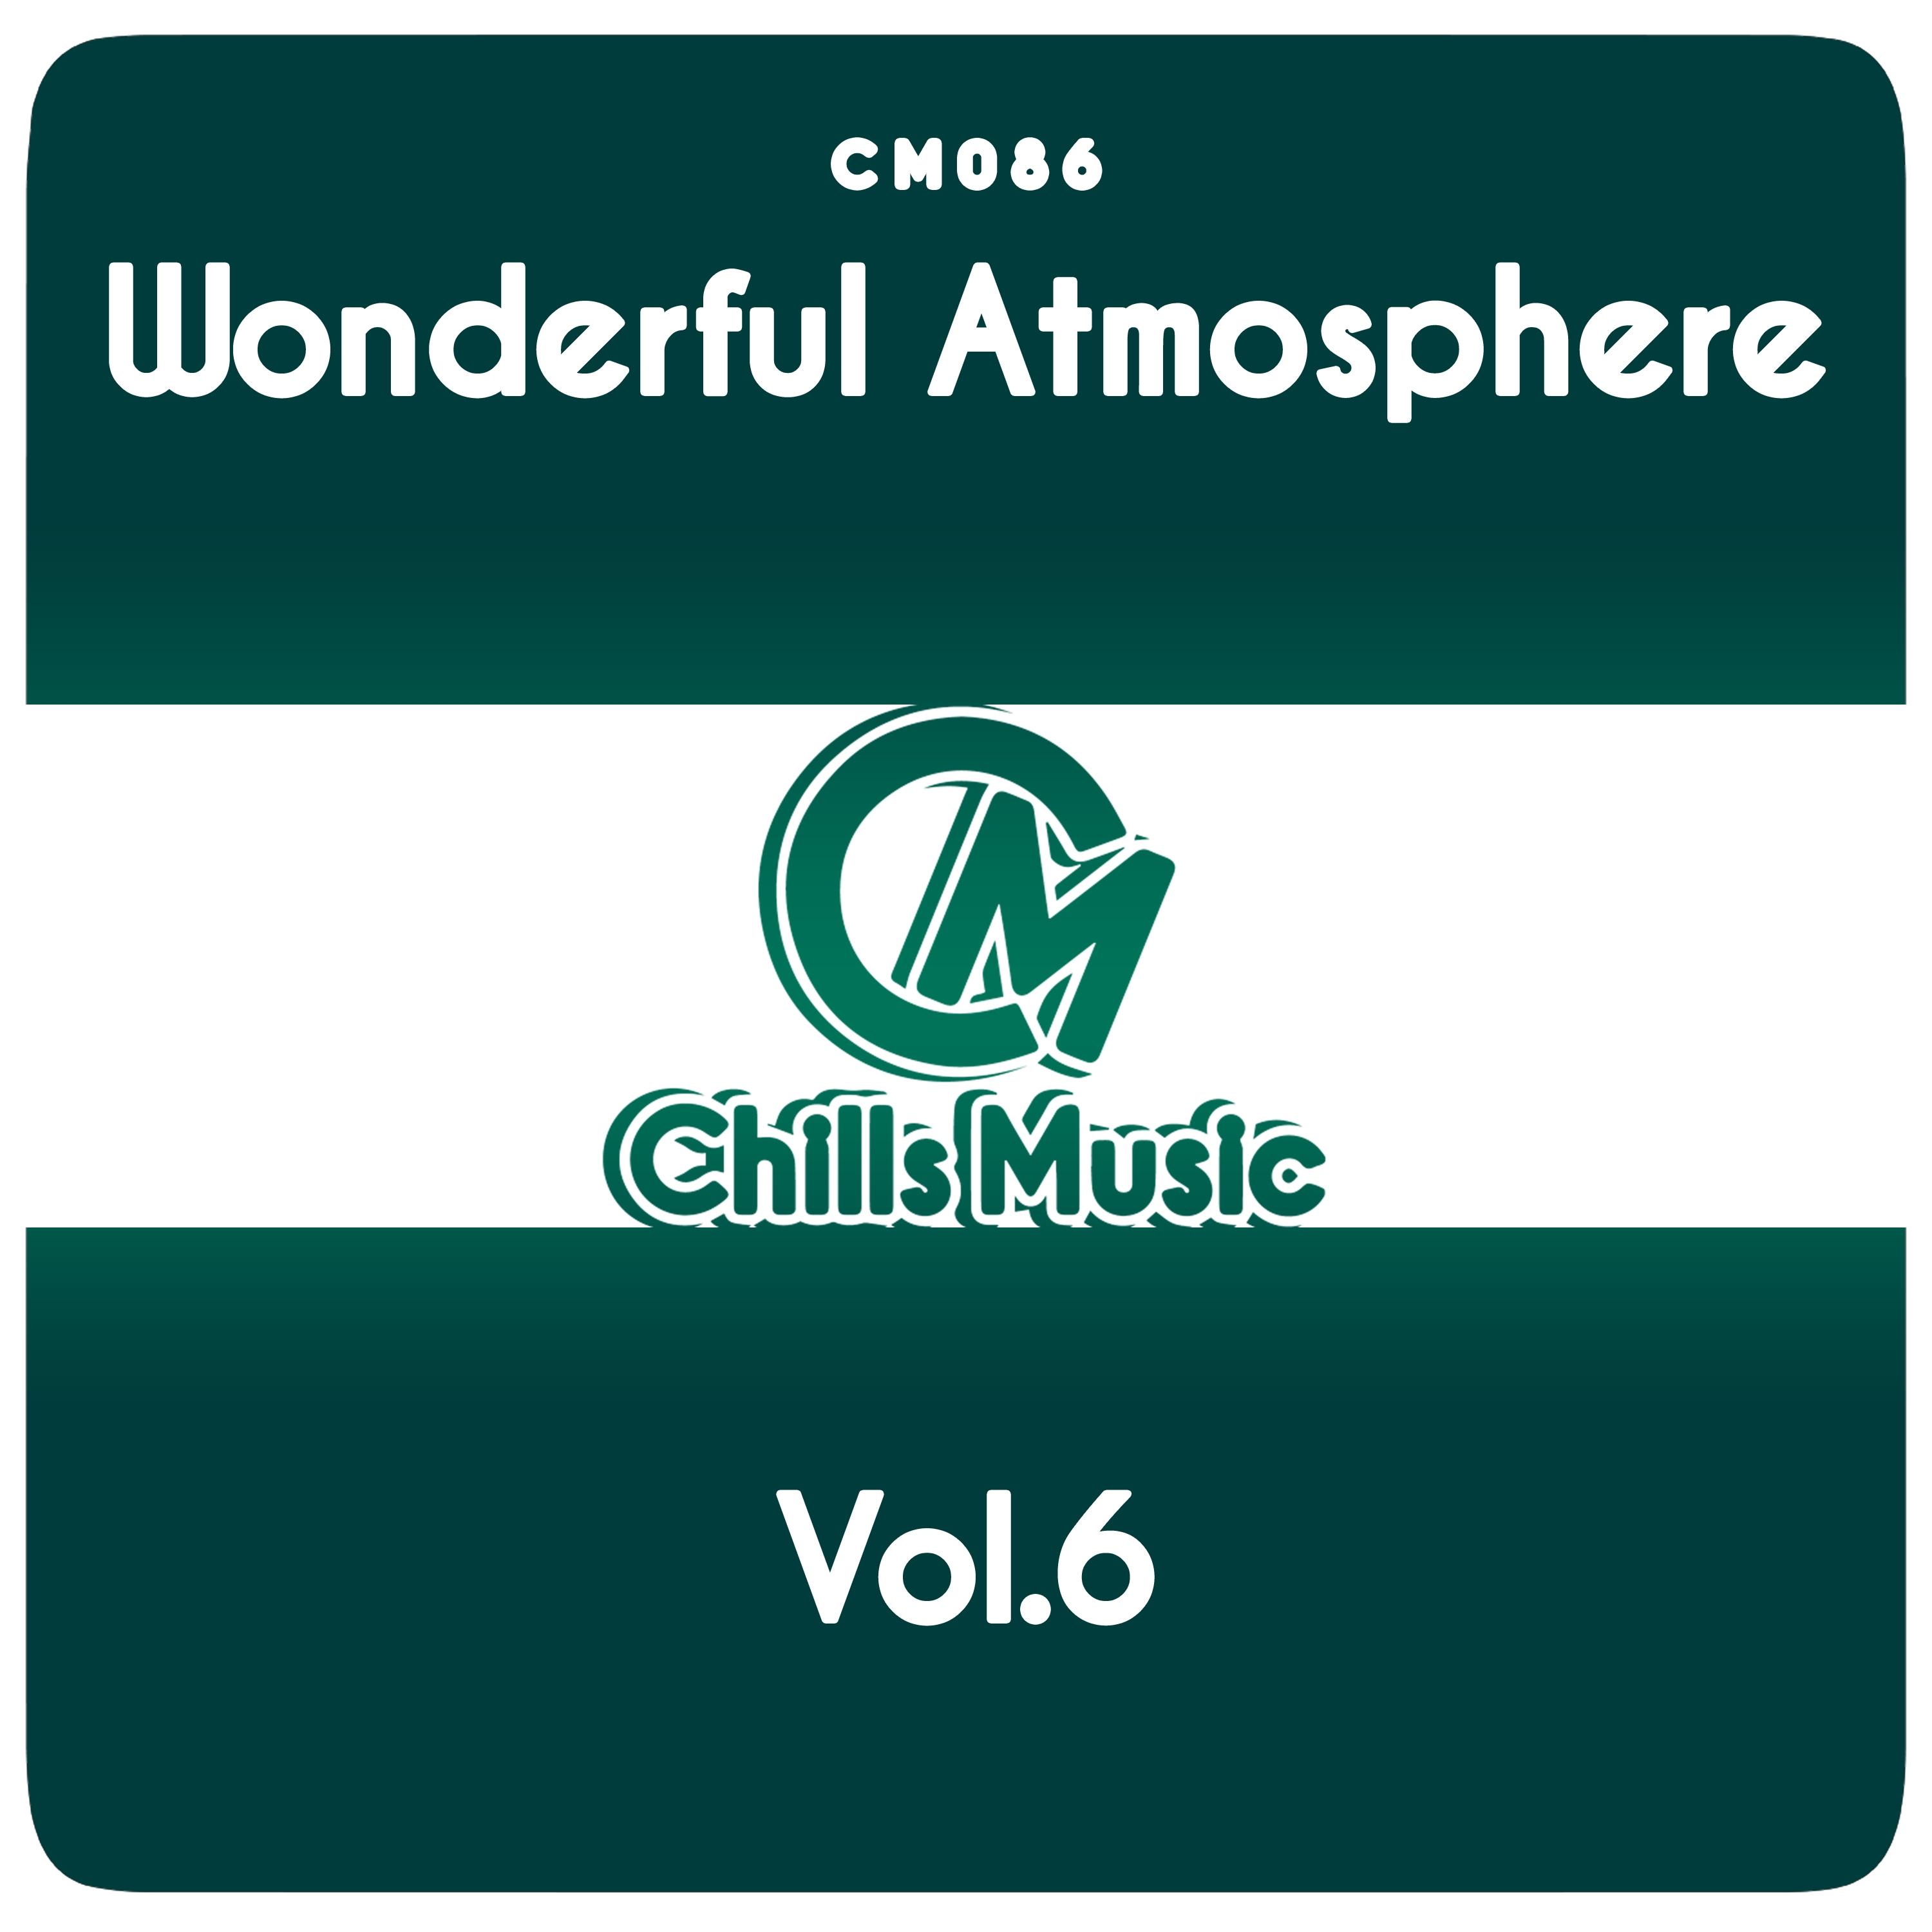 Wonderful Atmosphere Vol.6